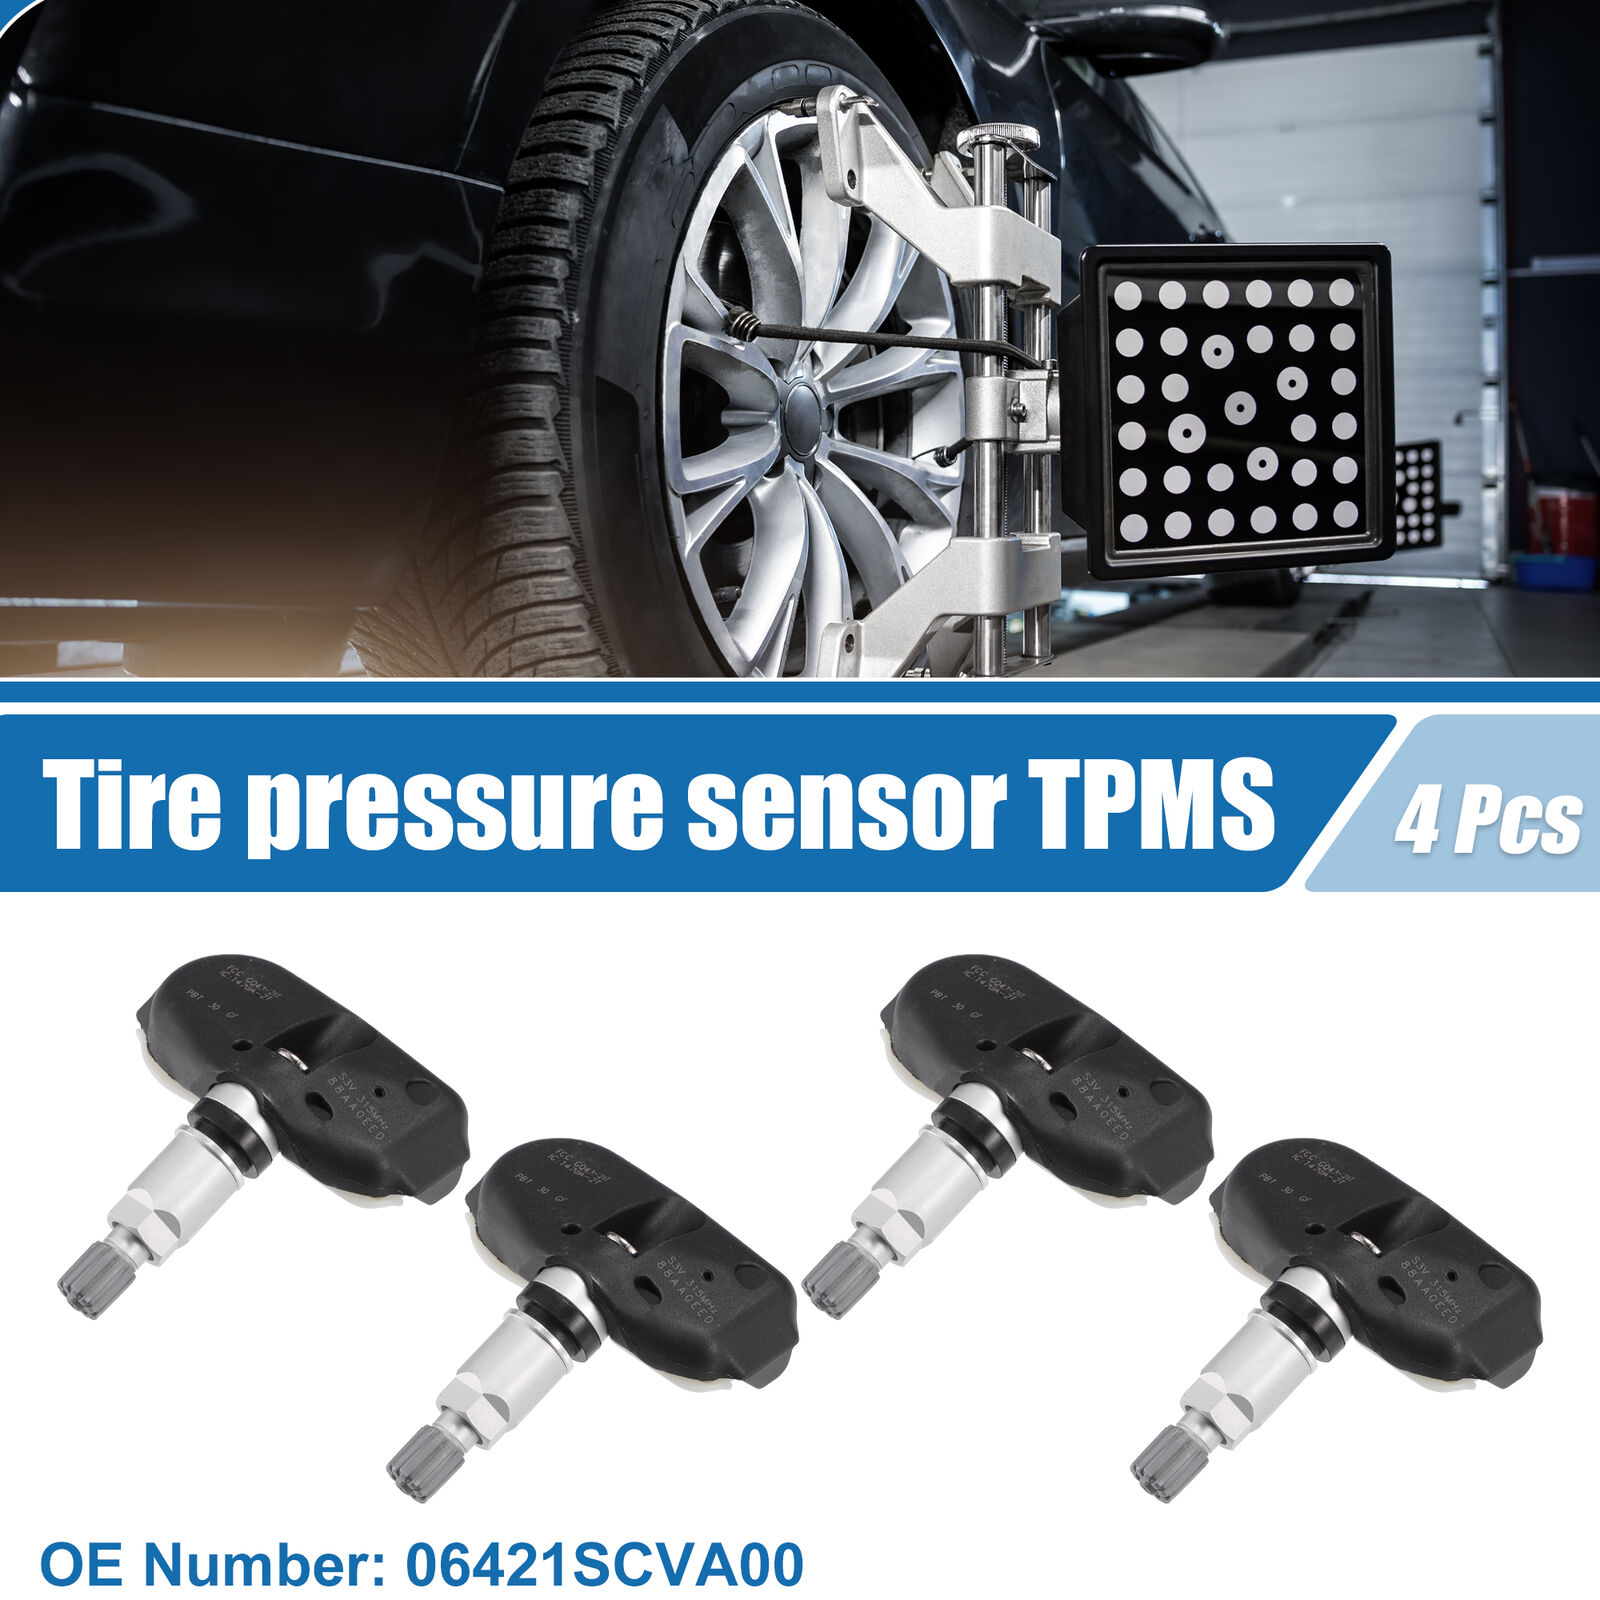 4 Pcs Tire Pressure Sensor TPMS No.06421SCVA00 for Honda Element Silver Tone